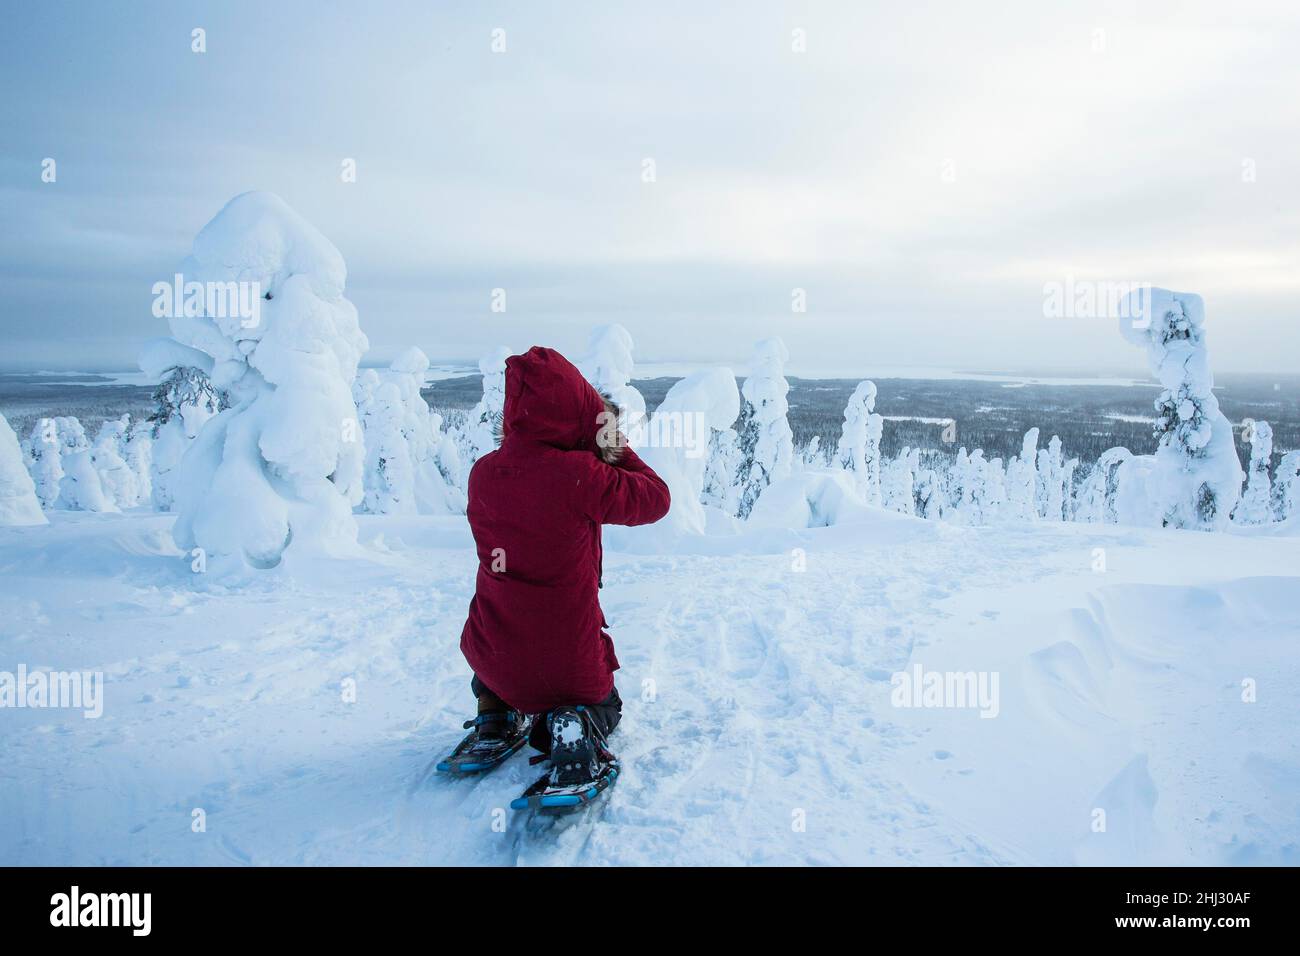 Fotograf, der im Riisitunturi-Nationalpark, Lappland, Finnland, Bilder von schneebedeckten Bäumen macht Stockfoto